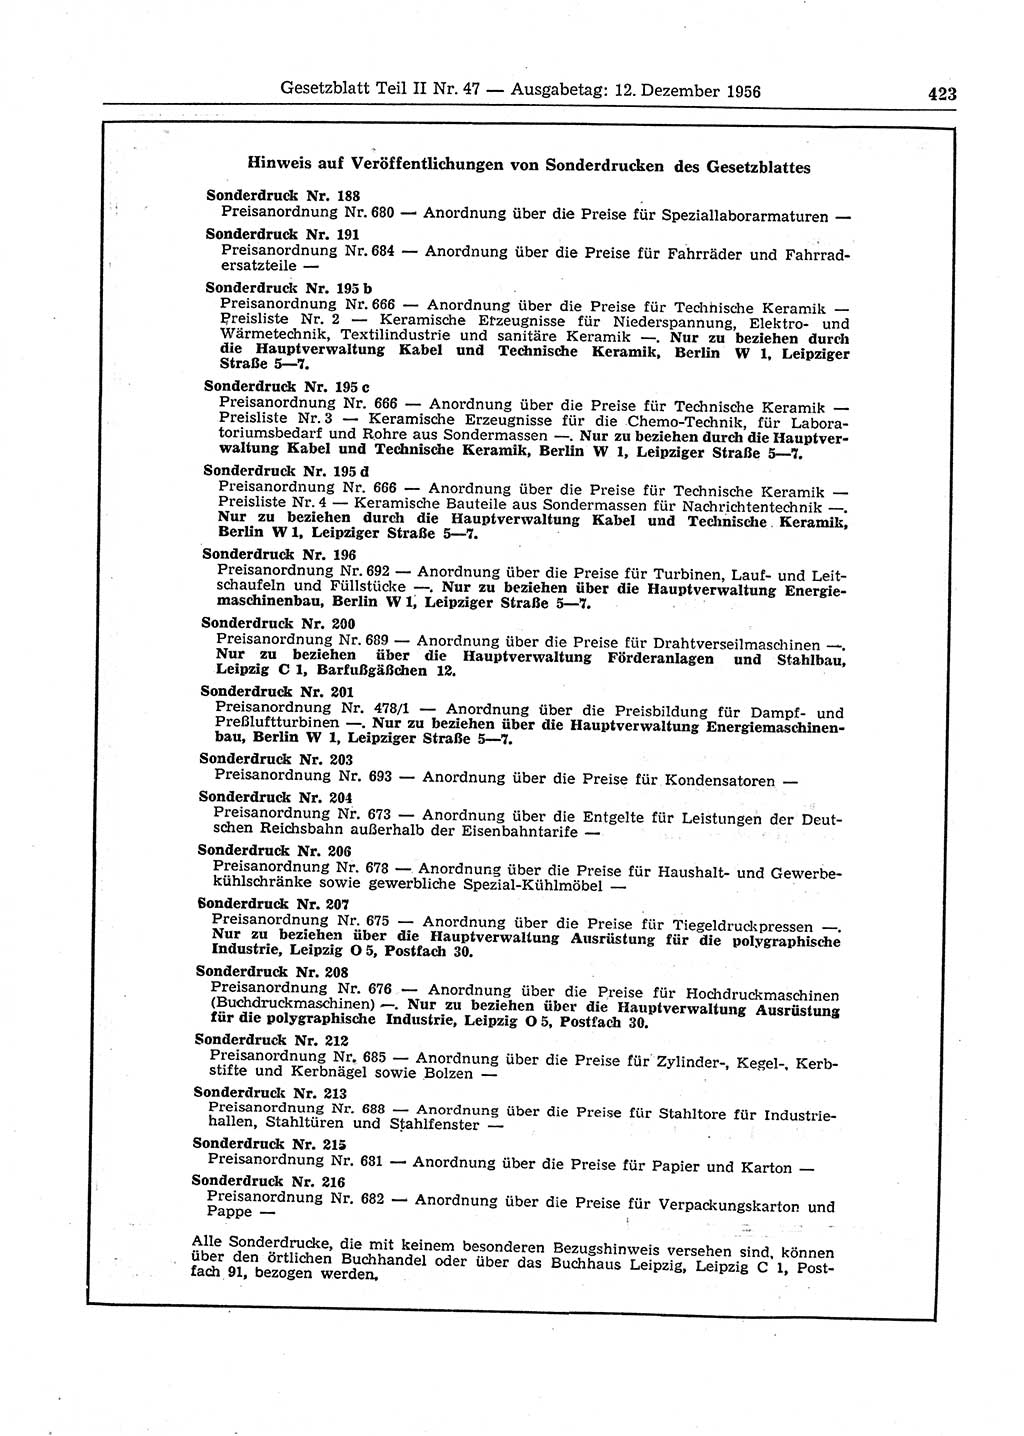 Gesetzblatt (GBl.) der Deutschen Demokratischen Republik (DDR) Teil ⅠⅠ 1956, Seite 423 (GBl. DDR ⅠⅠ 1956, S. 423)